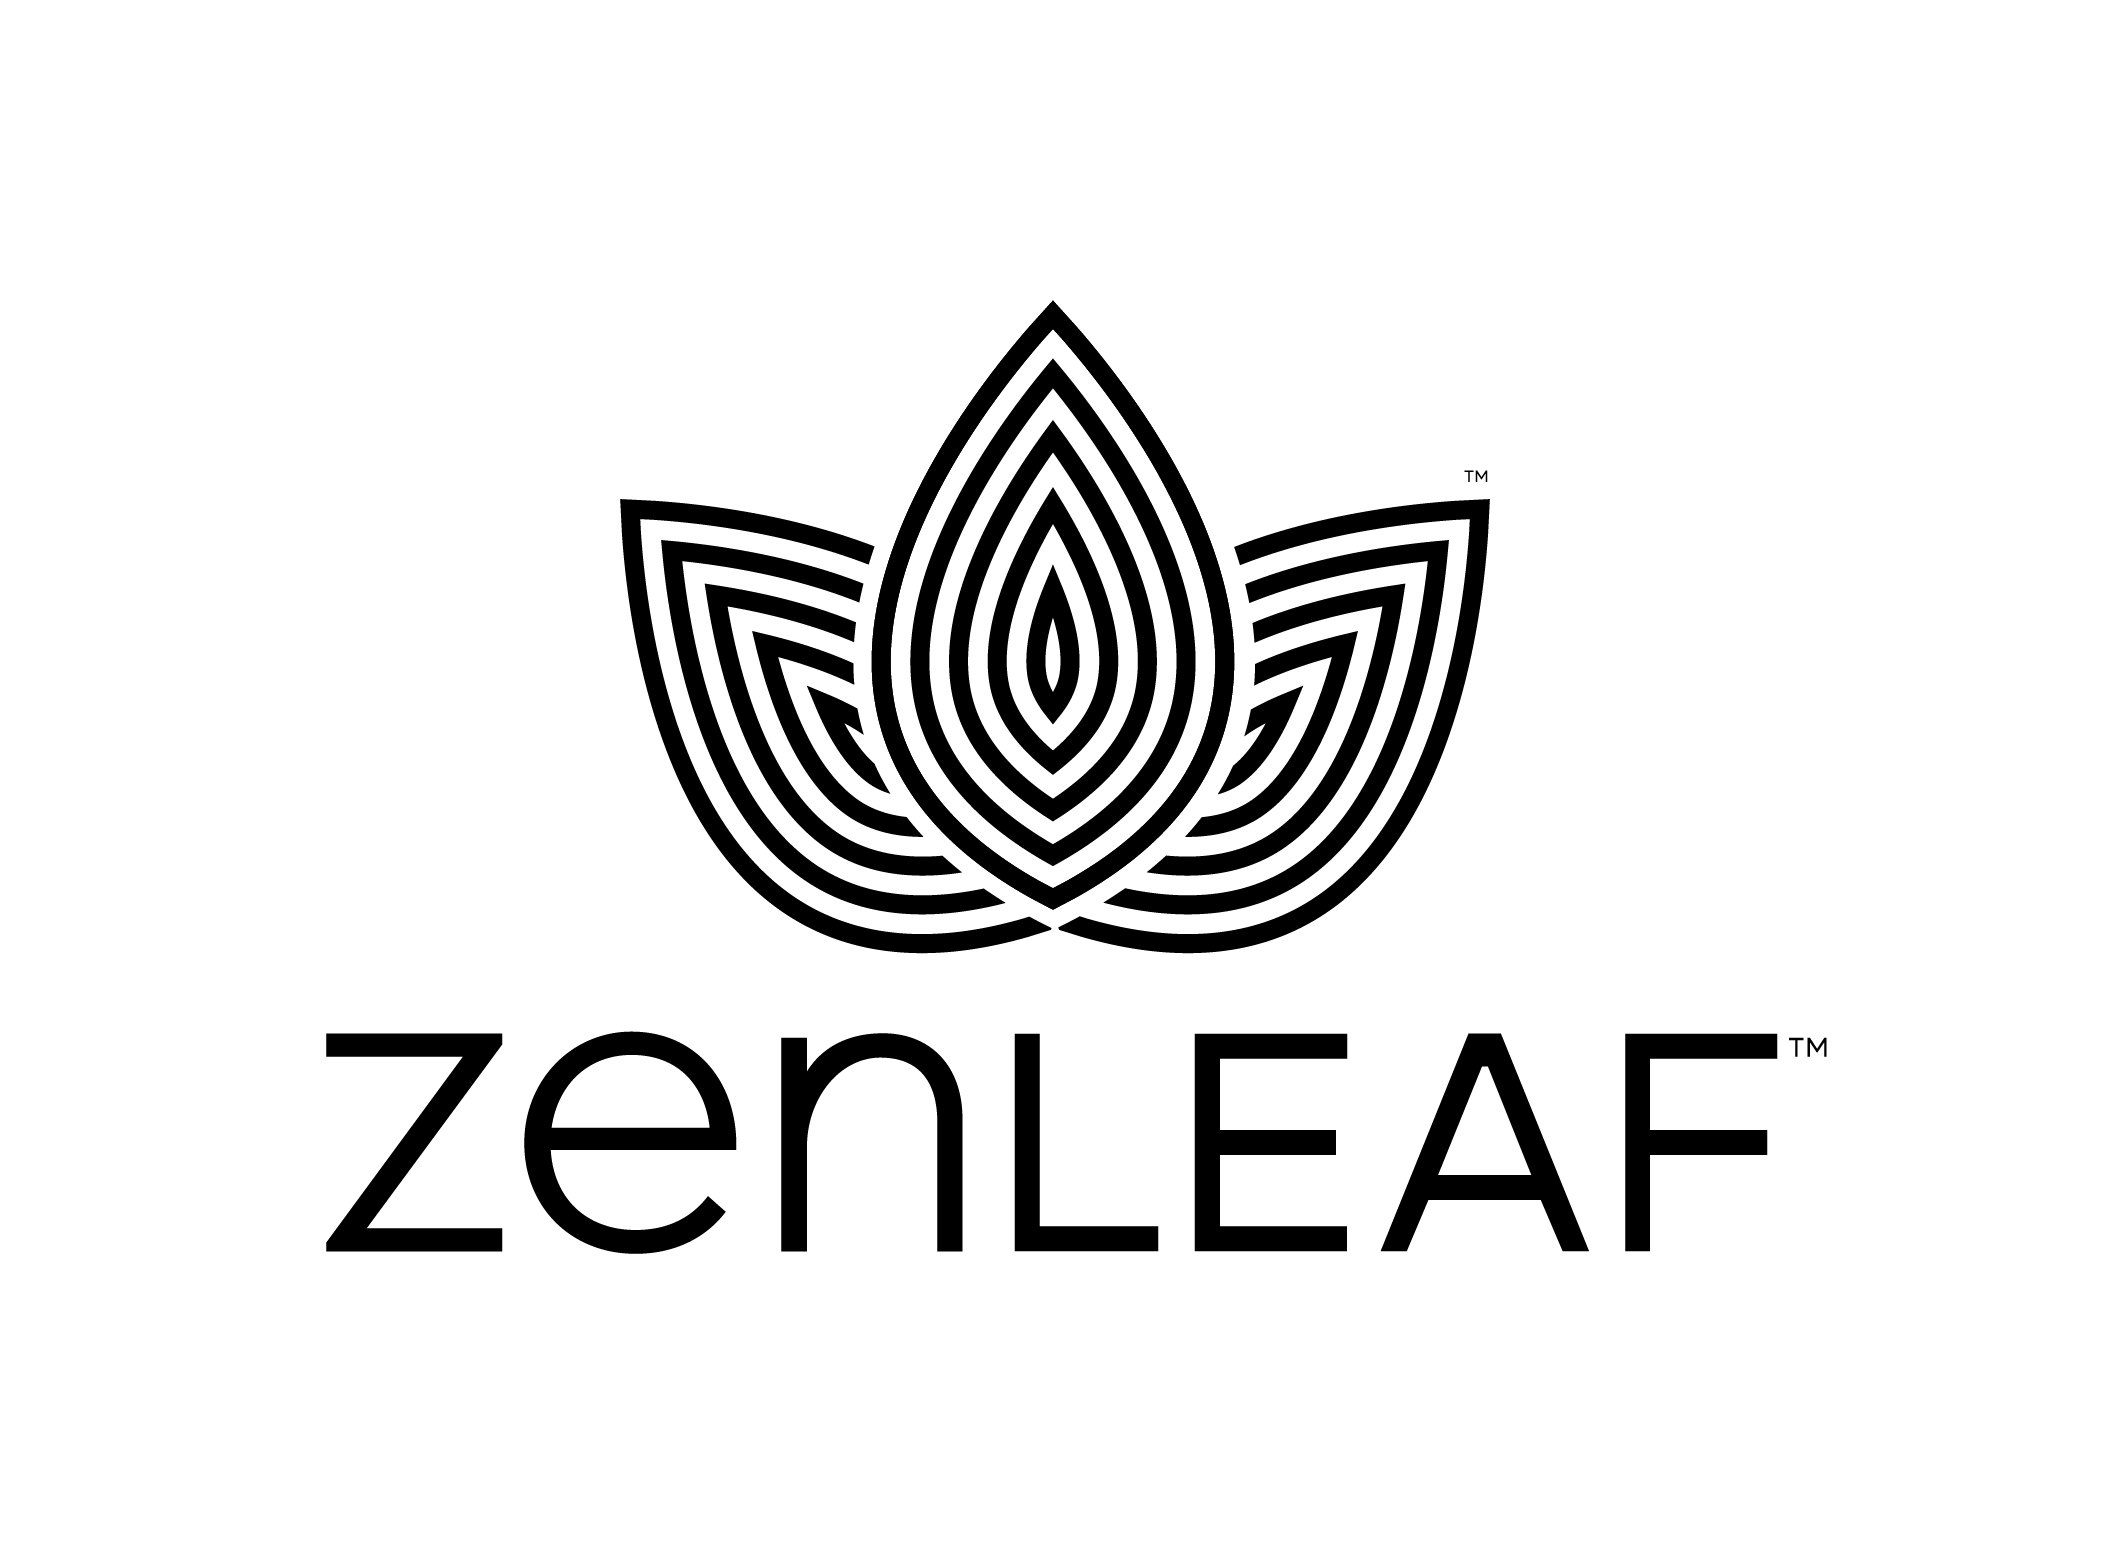 Zen Leaf Towson